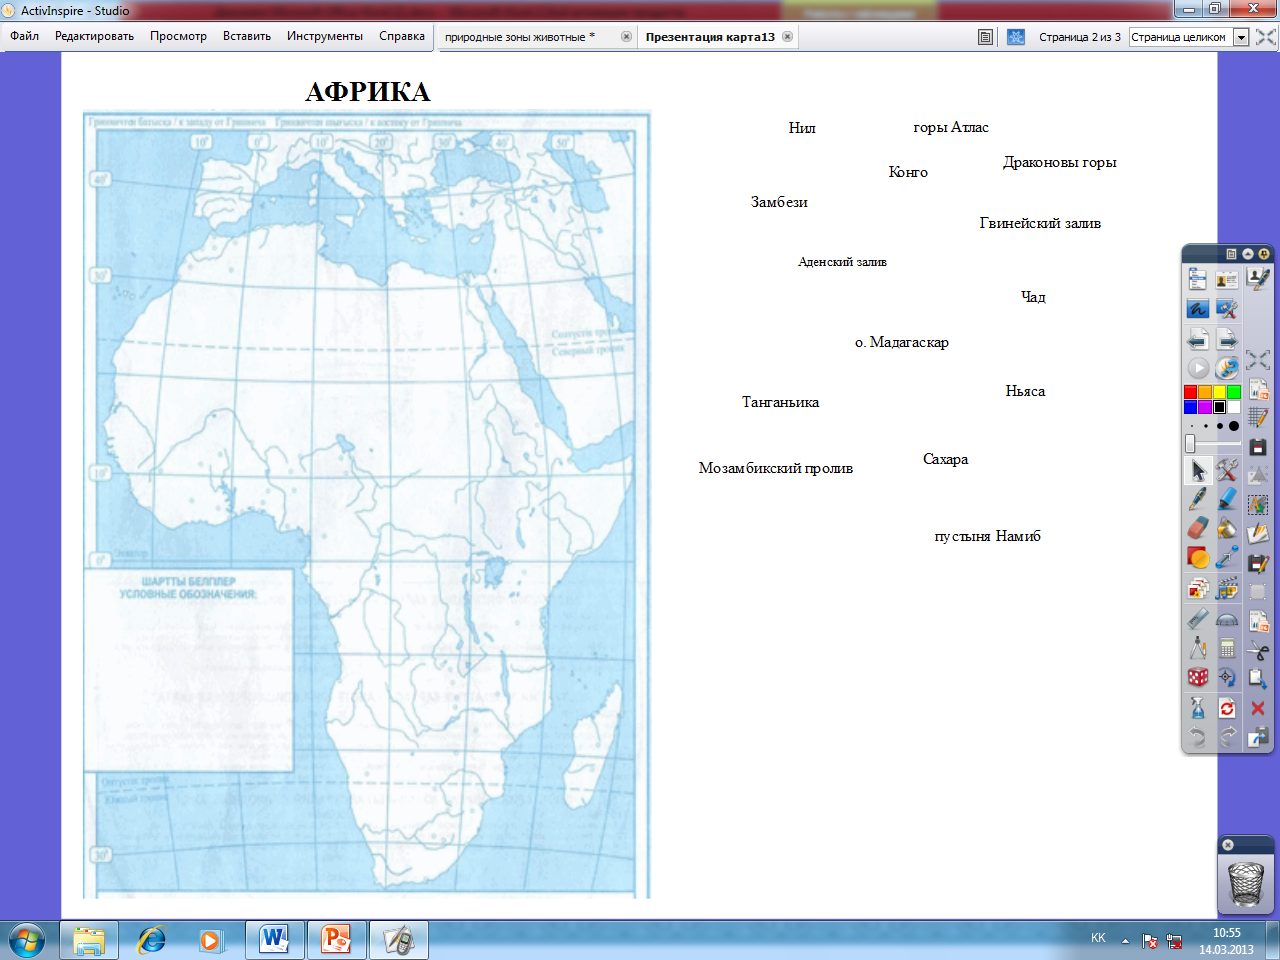 Горы атлас на контурной карте 7 класс. Номенклатура Африка 7 класс география на контурной карте Африки. Номенклатура Африки география 7. Номенклатура по географии 7 класс Африка. Номенклатура Африка 7 класс география карта.